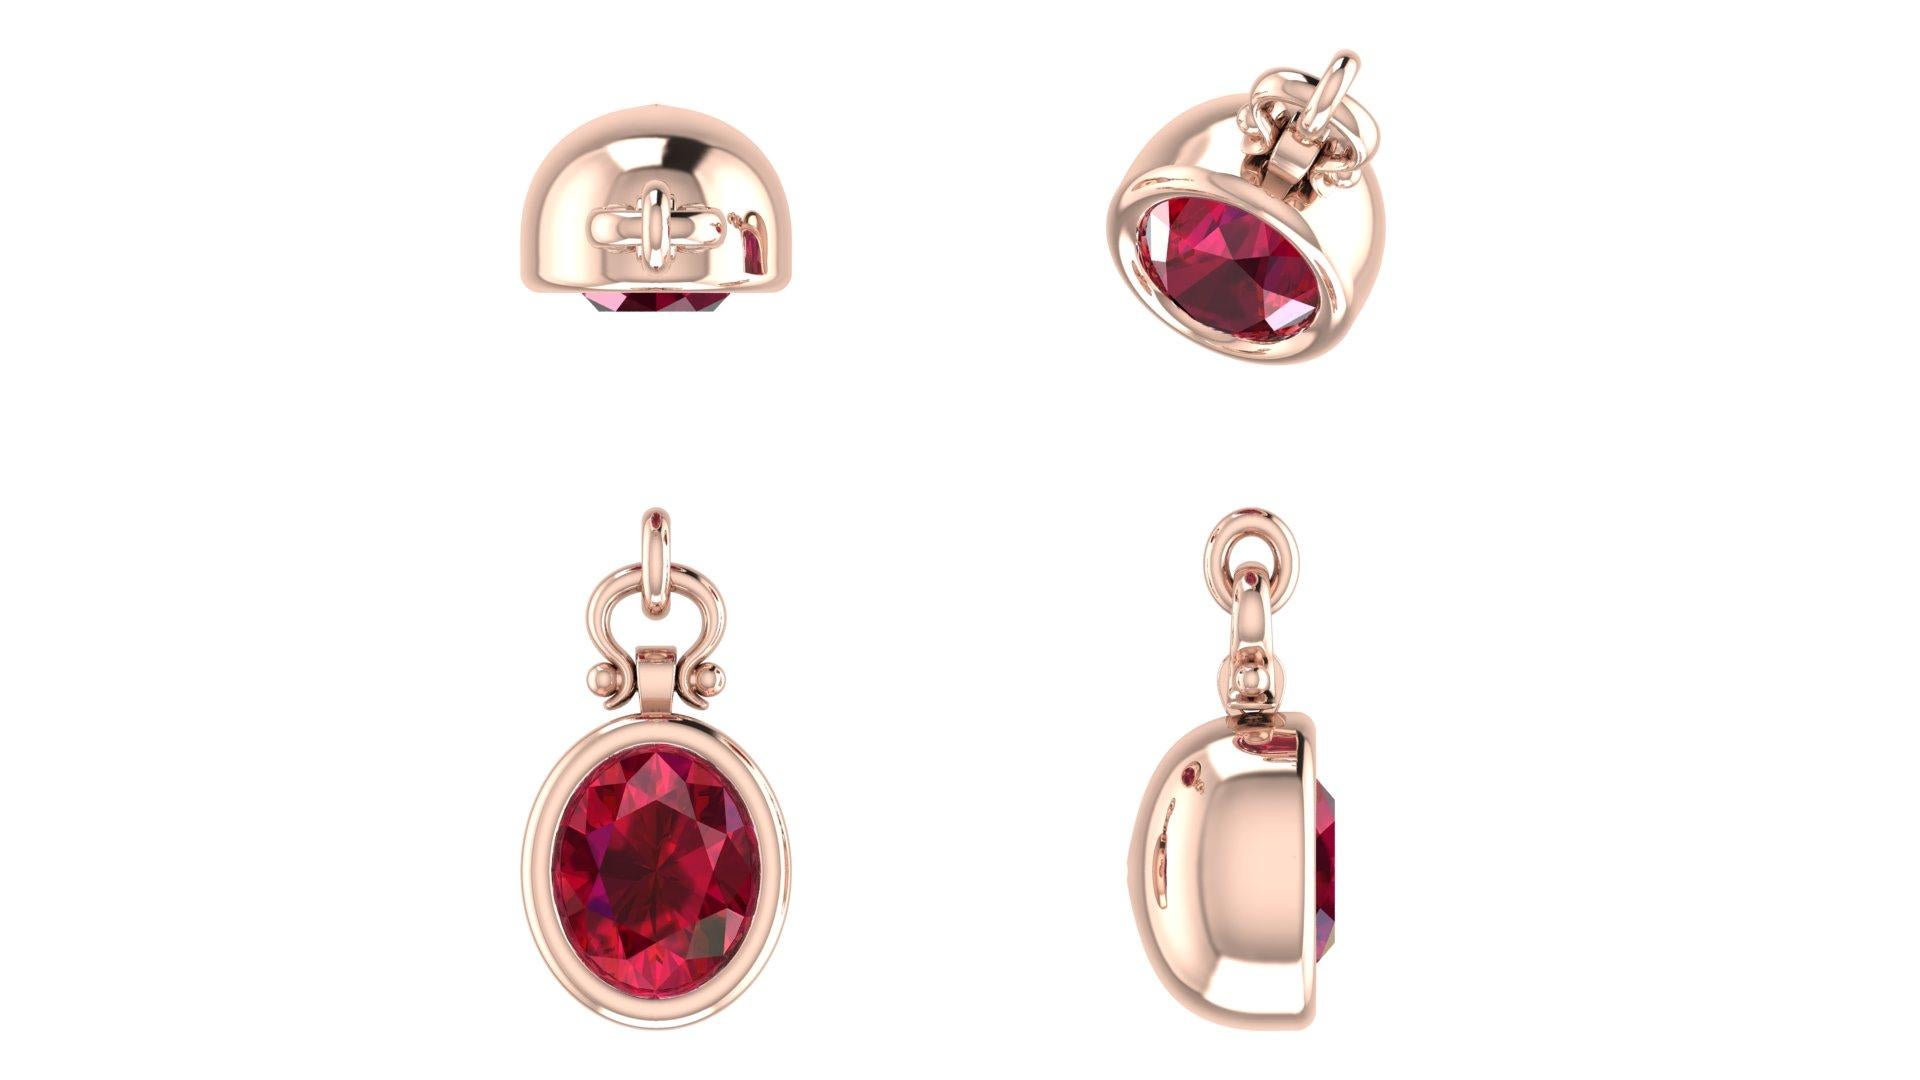 Women's 2.5 Carat Emteem Certifiied Oval Cut Ruby Pendant Necklace in 18K For Sale